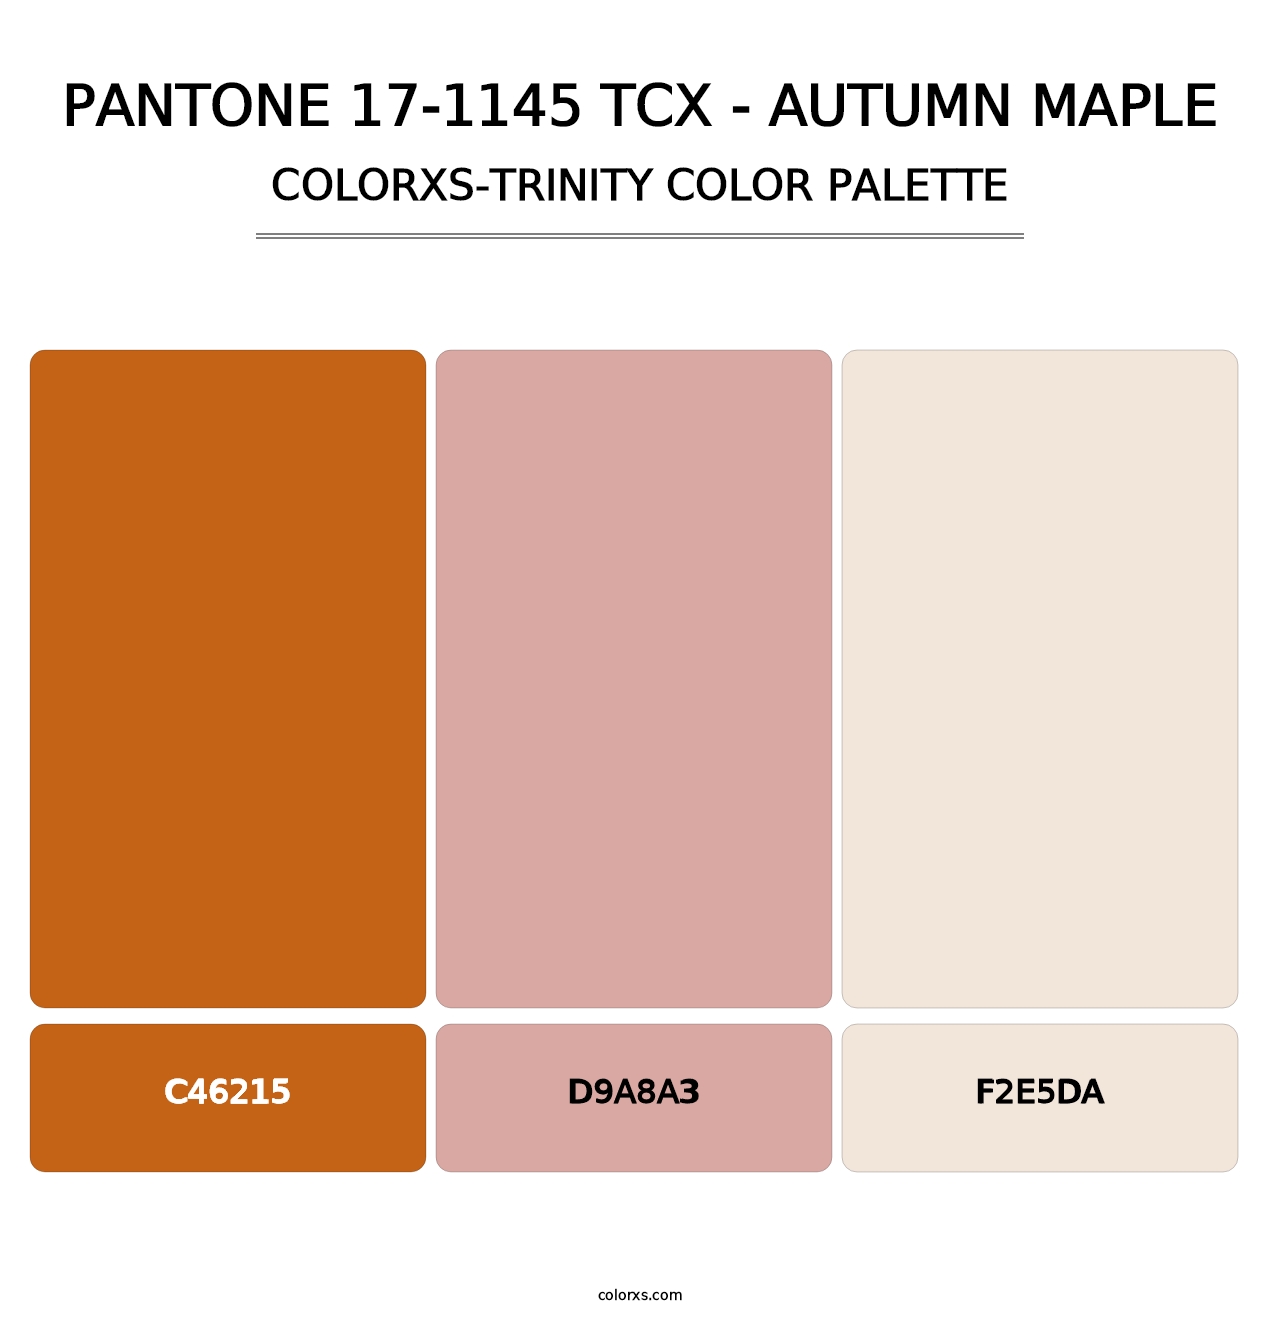 PANTONE 17-1145 TCX - Autumn Maple - Colorxs Trinity Palette